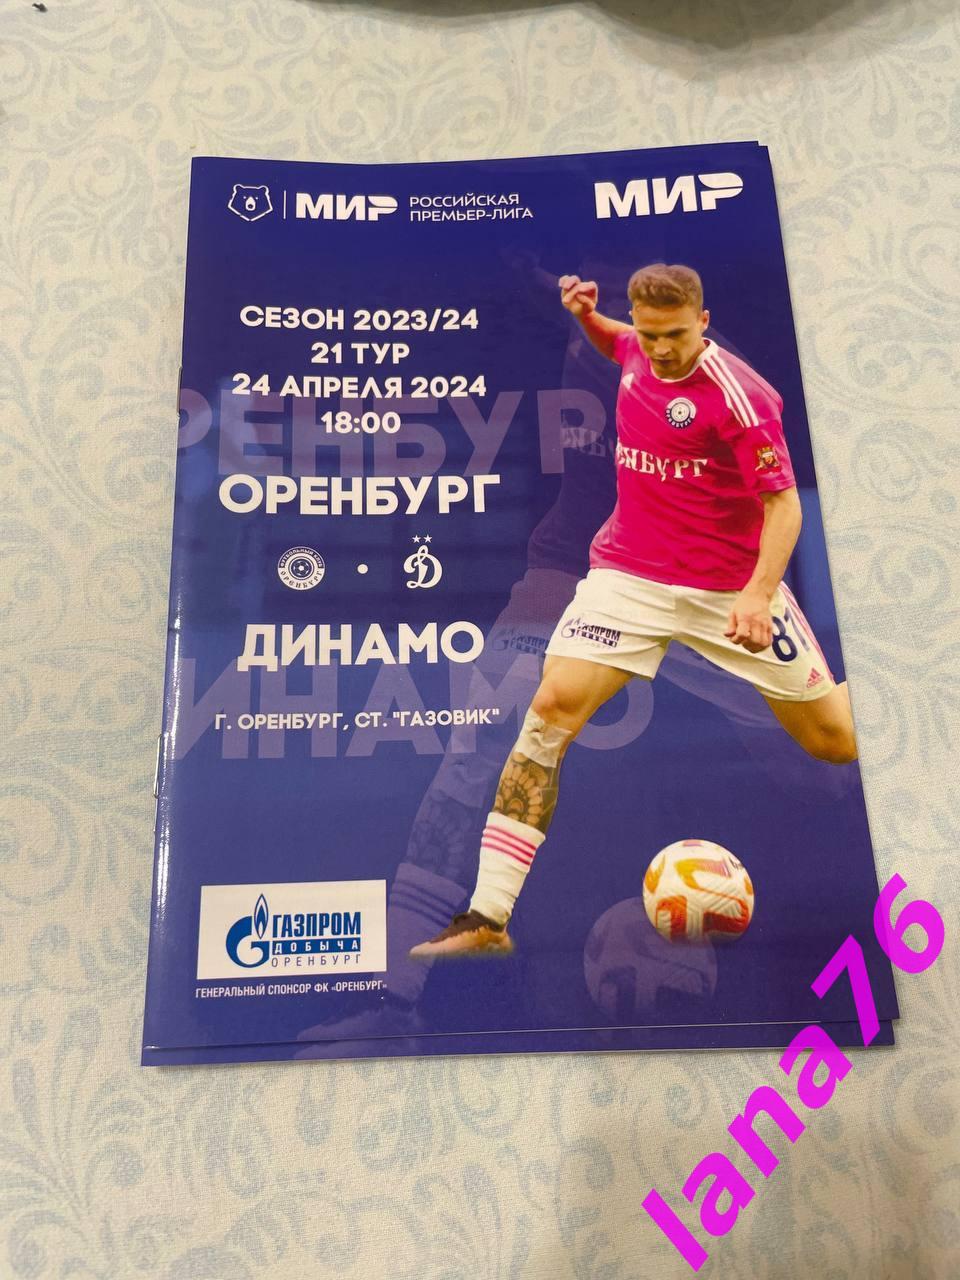 Оренбург - Динамо Москва 24.04.2024